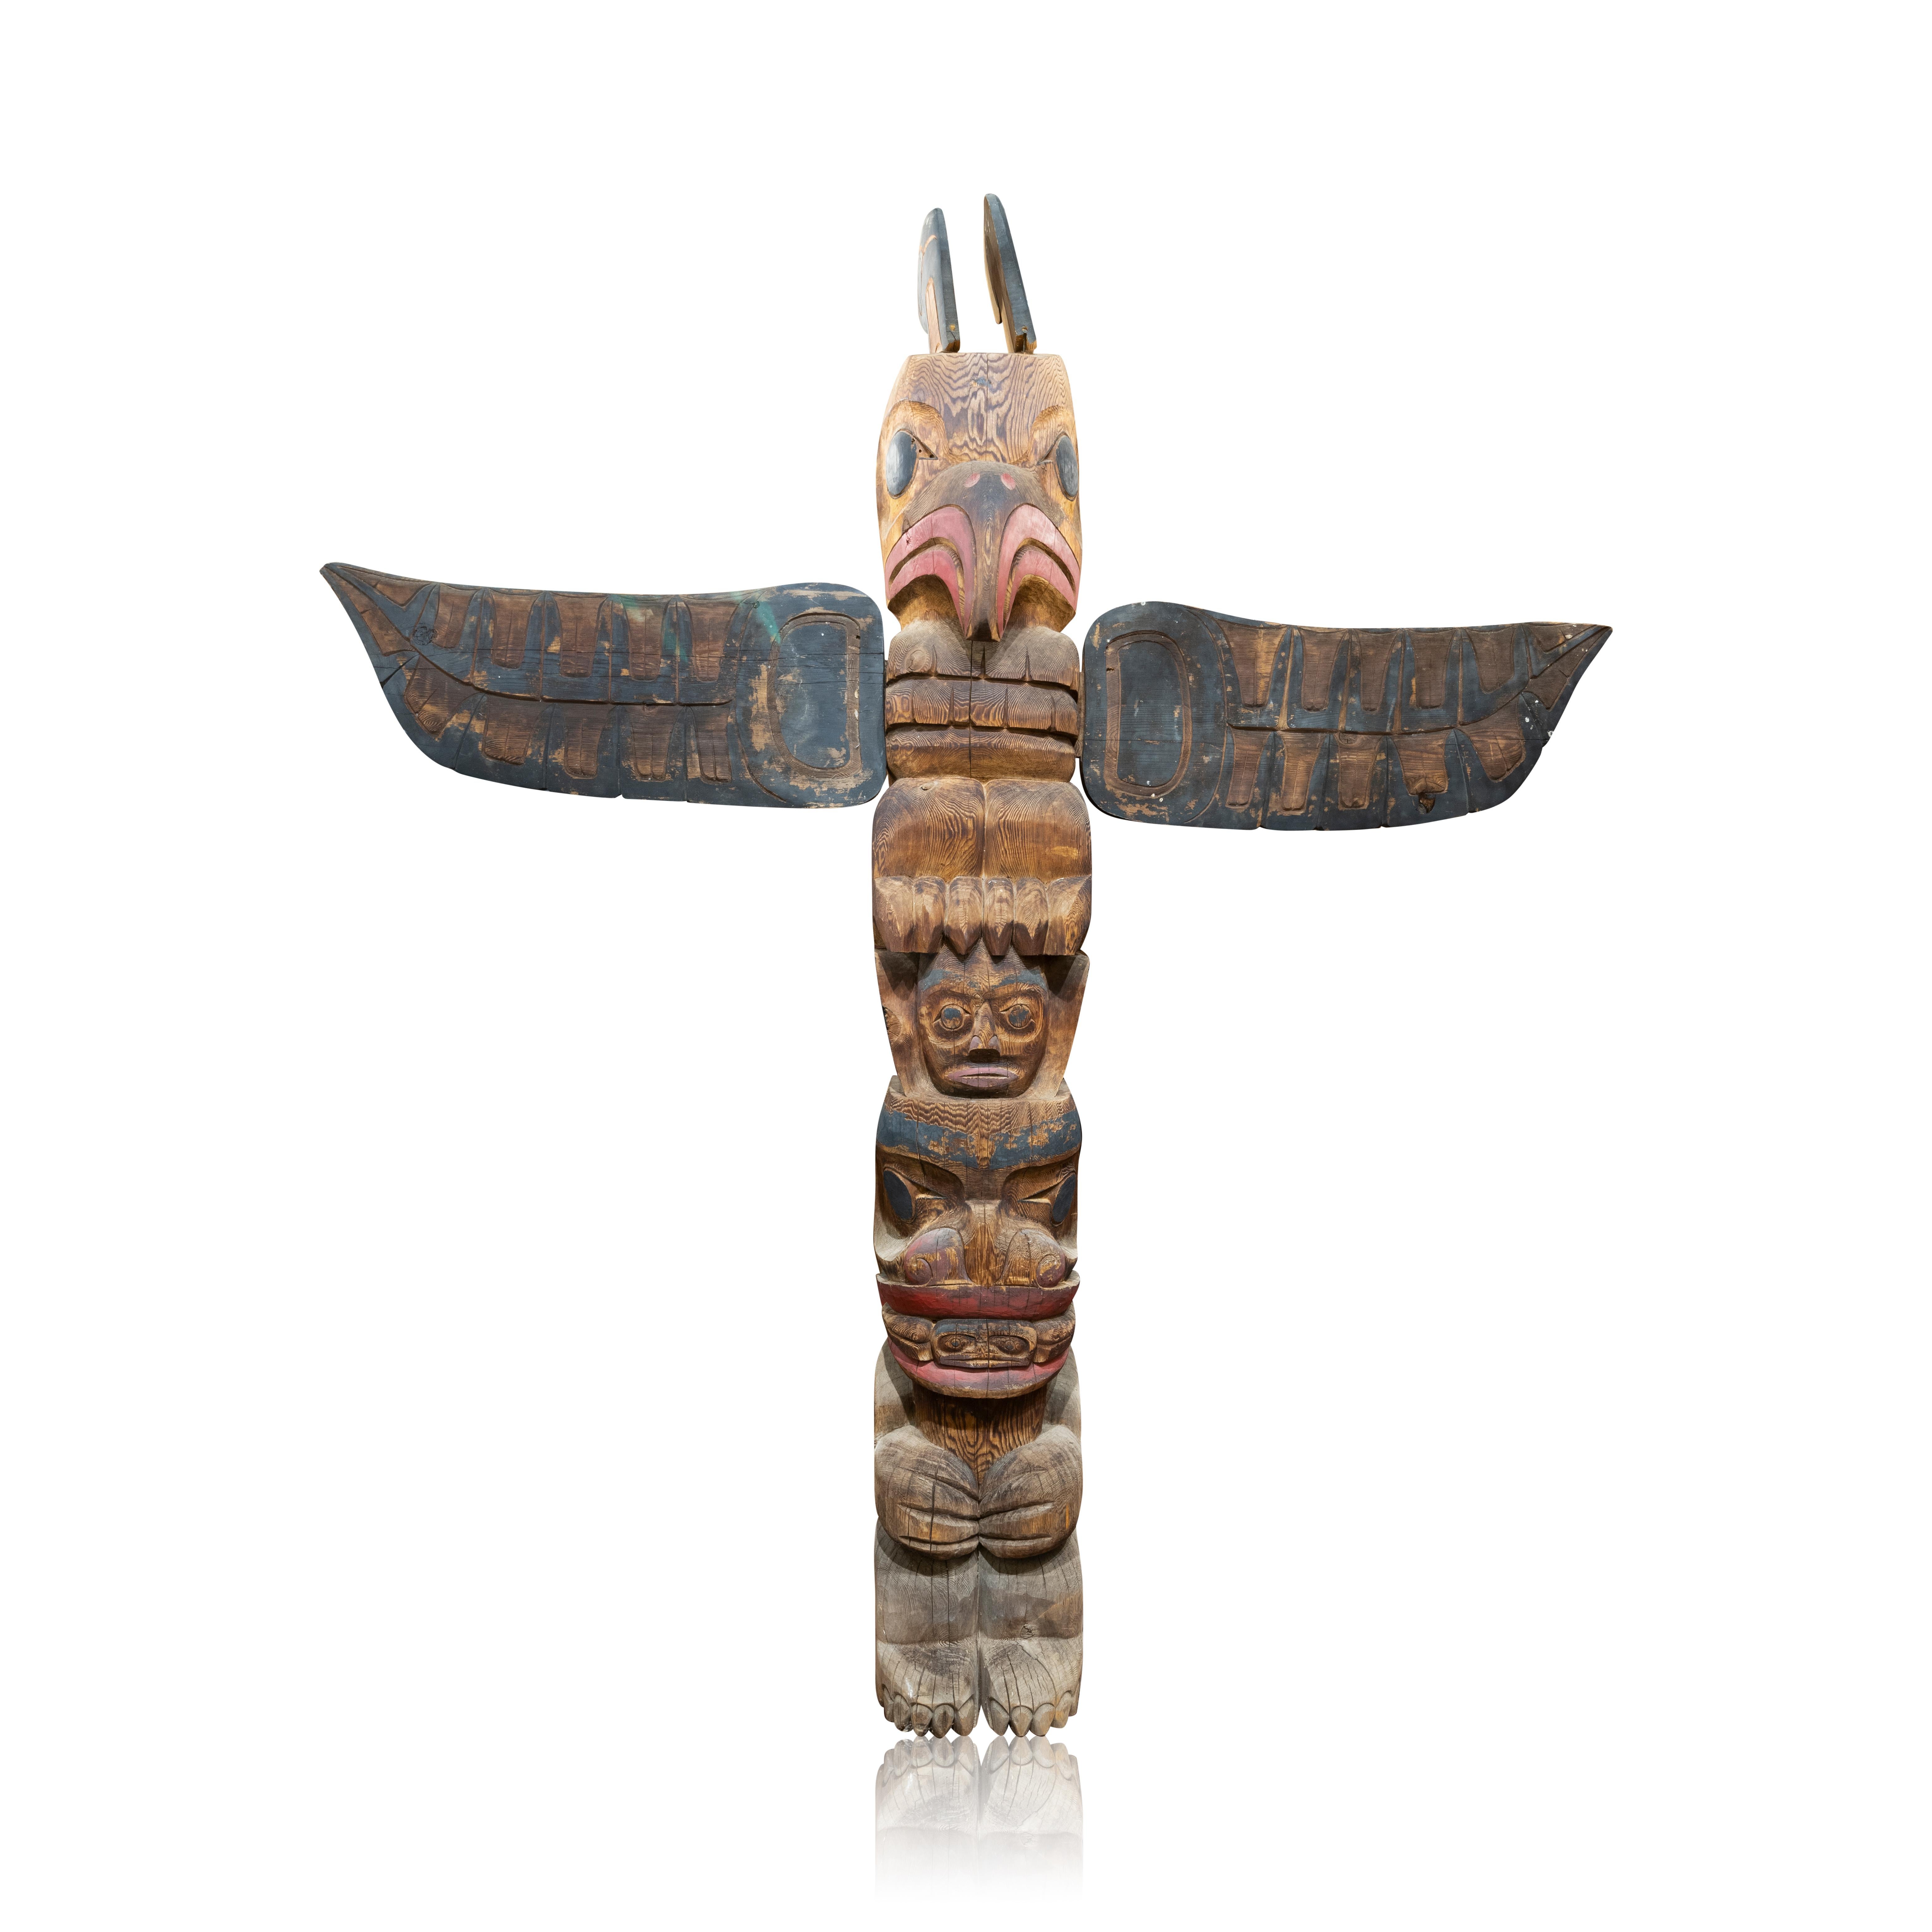 Paire assortie de totems amérindiens Salish. Les deux sont identiques. Sculptée comme un oiseau-tonnerre avec des anneaux écartés sculptés séparément et attachés, perchée sur la tête d'un humain au-dessus d'une figure d'ours assise avec une